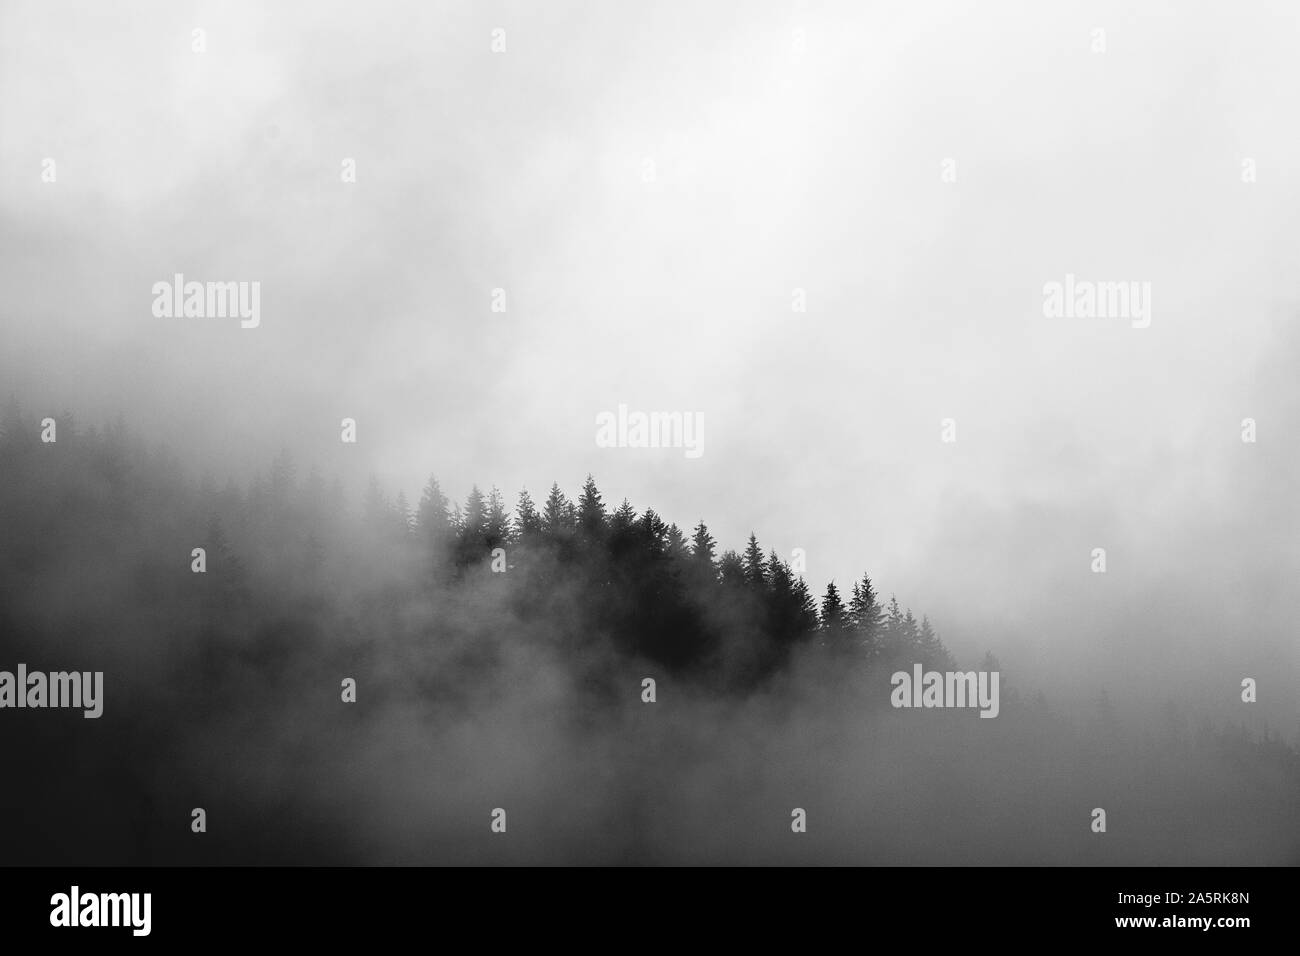 Tourbillons de brume autour d'une montagne couverte de pins à washington Banque D'Images